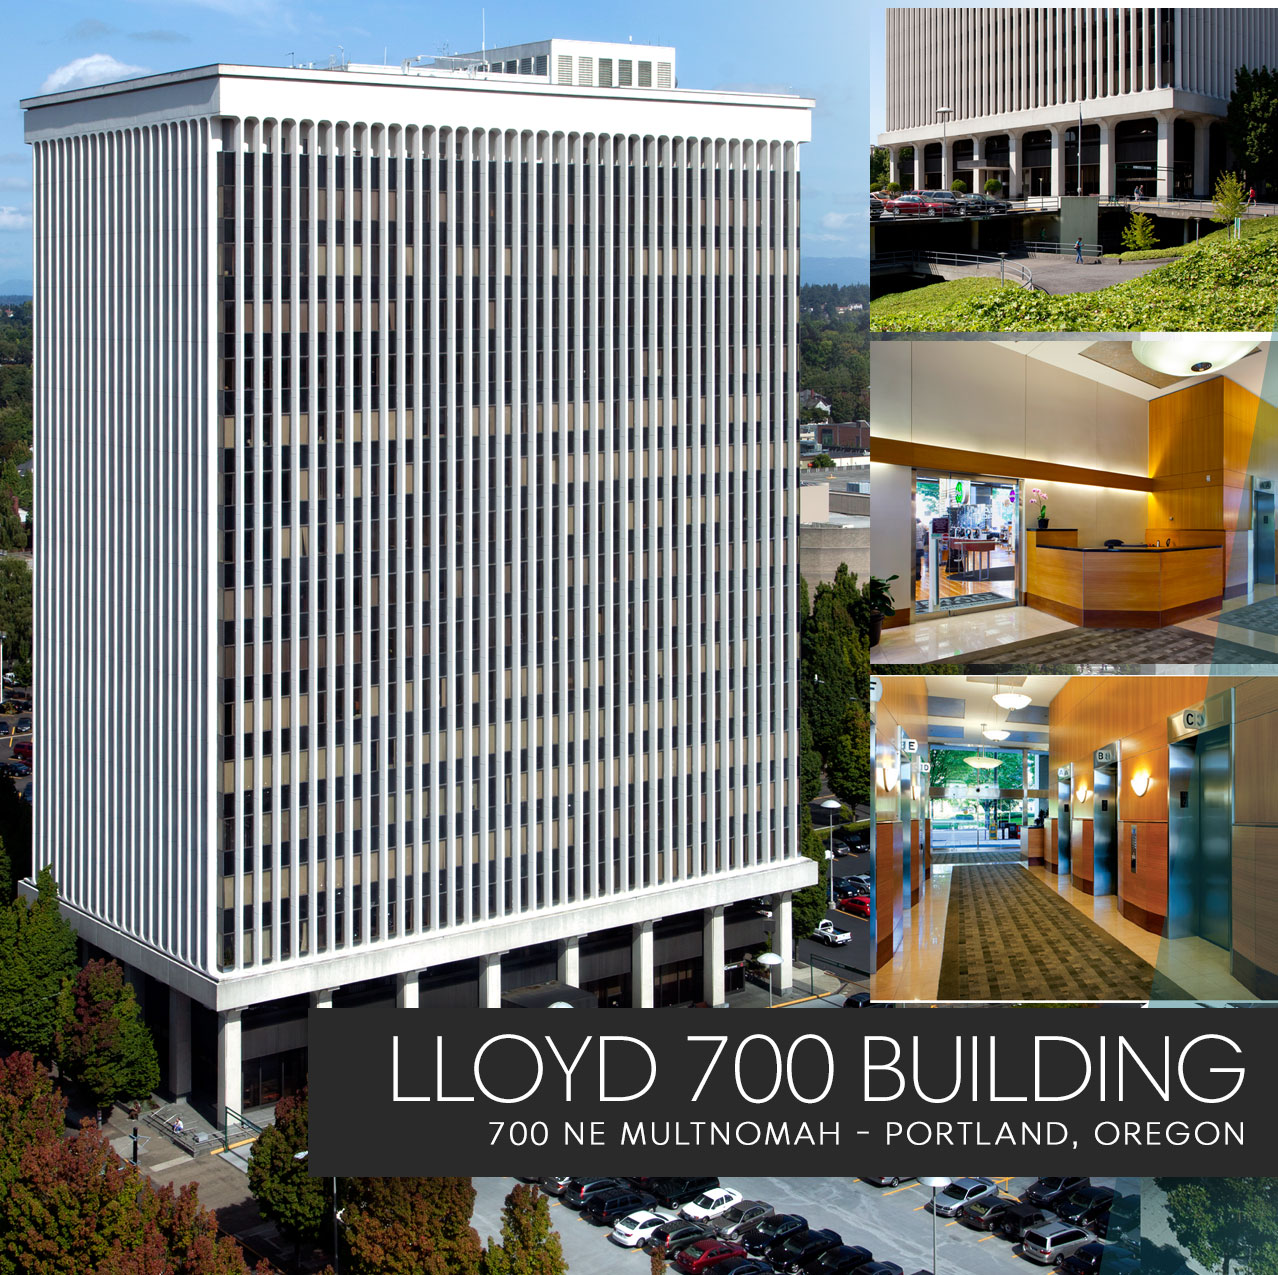 LLoyd 700 Building